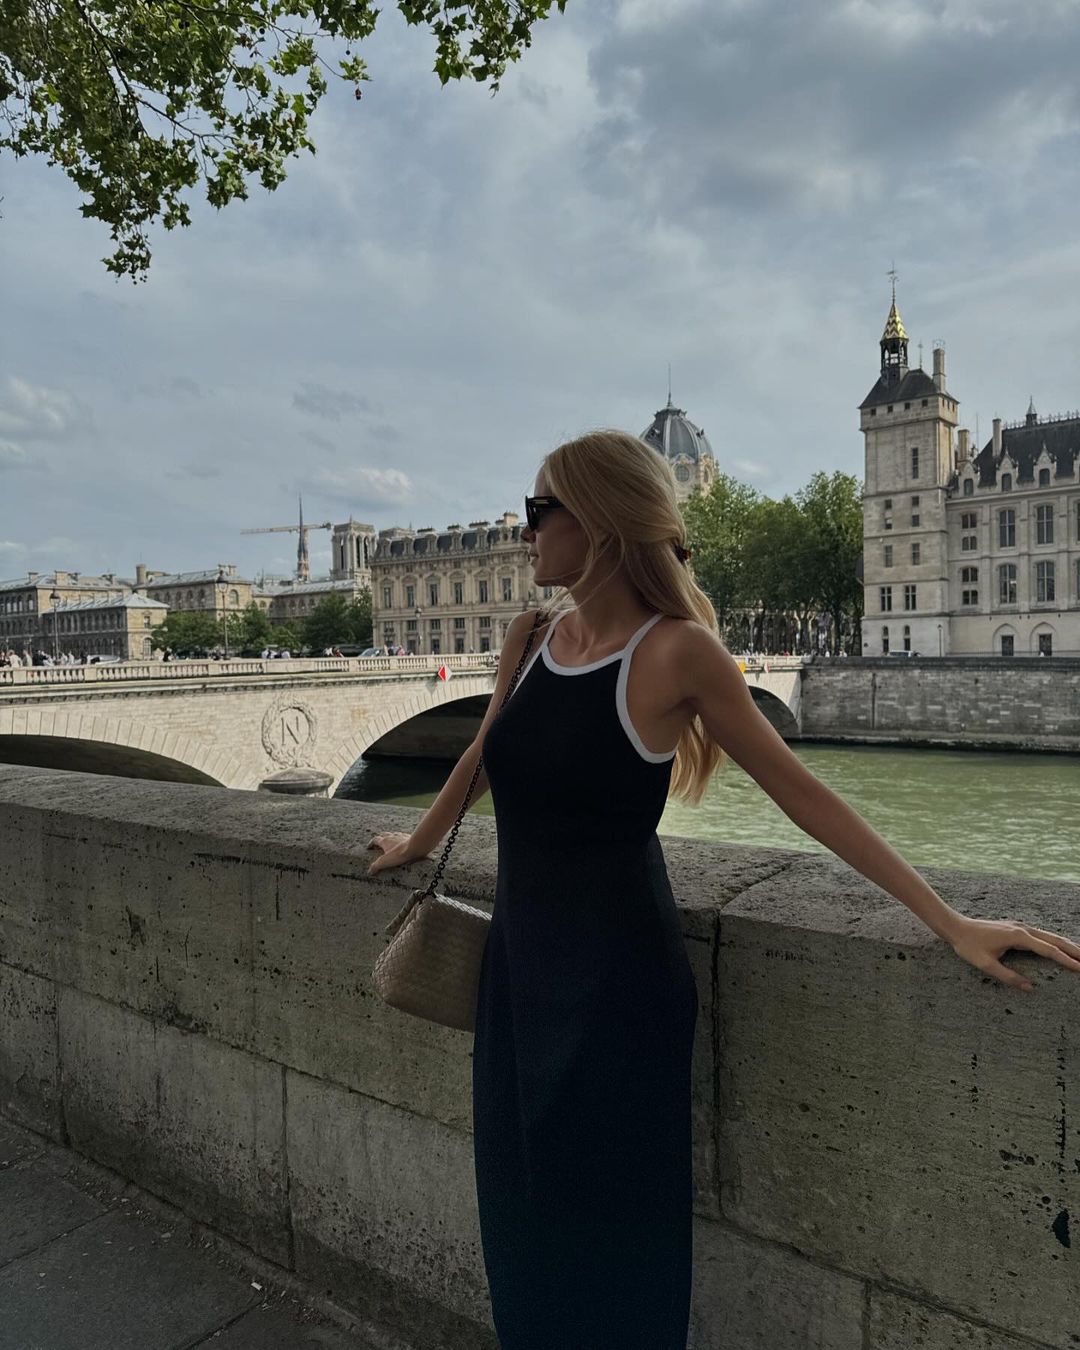 Δούκισσα Νομικού: Τα 3 φορέματα που επέλεξε στο ταξίδι της στο Παρίσι είναι θηλυκά και ρομαντικά ταυτόχρονα